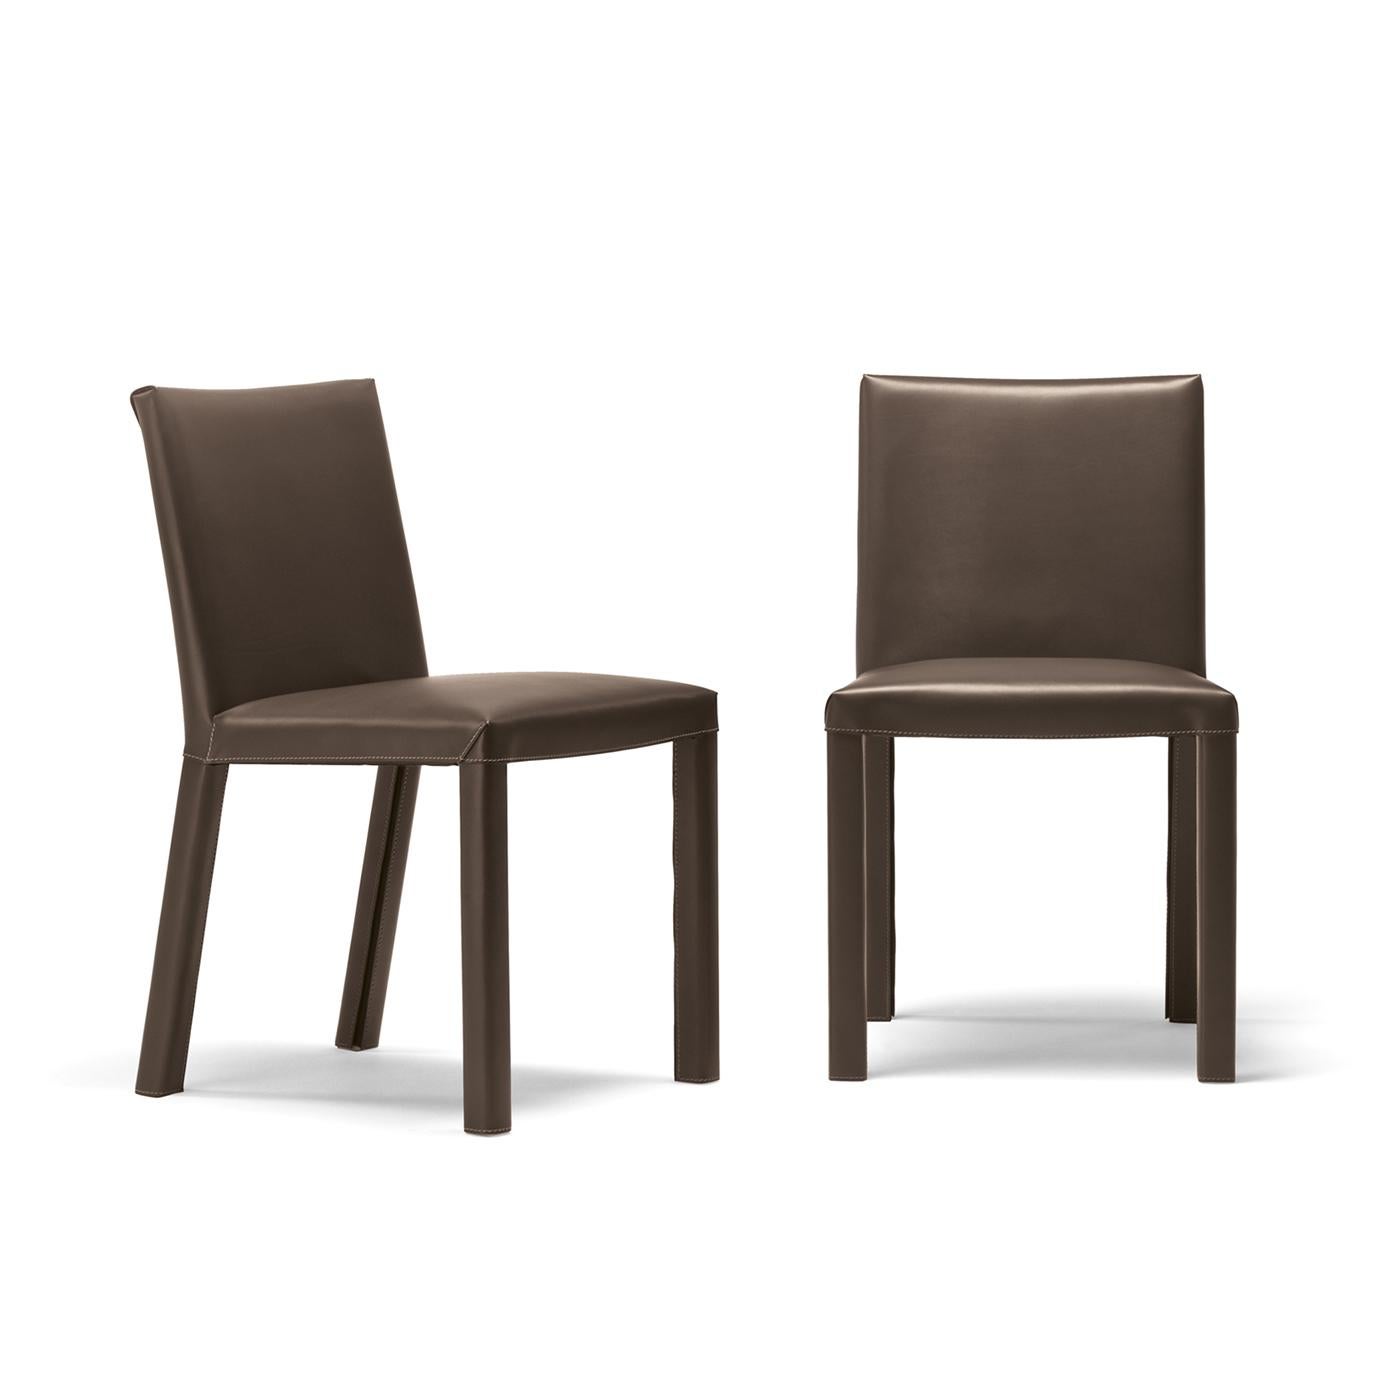 Dieser gepolsterte Stuhl ist sowohl prestigeträchtig als auch bequem. Die terrafarbene Lederbezugung und die einfachen, fließenden Linien machen ihn sowohl in eine Wohn- als auch eine Geschäftsumgebung passend. Der Stil ist außerdem mit einem